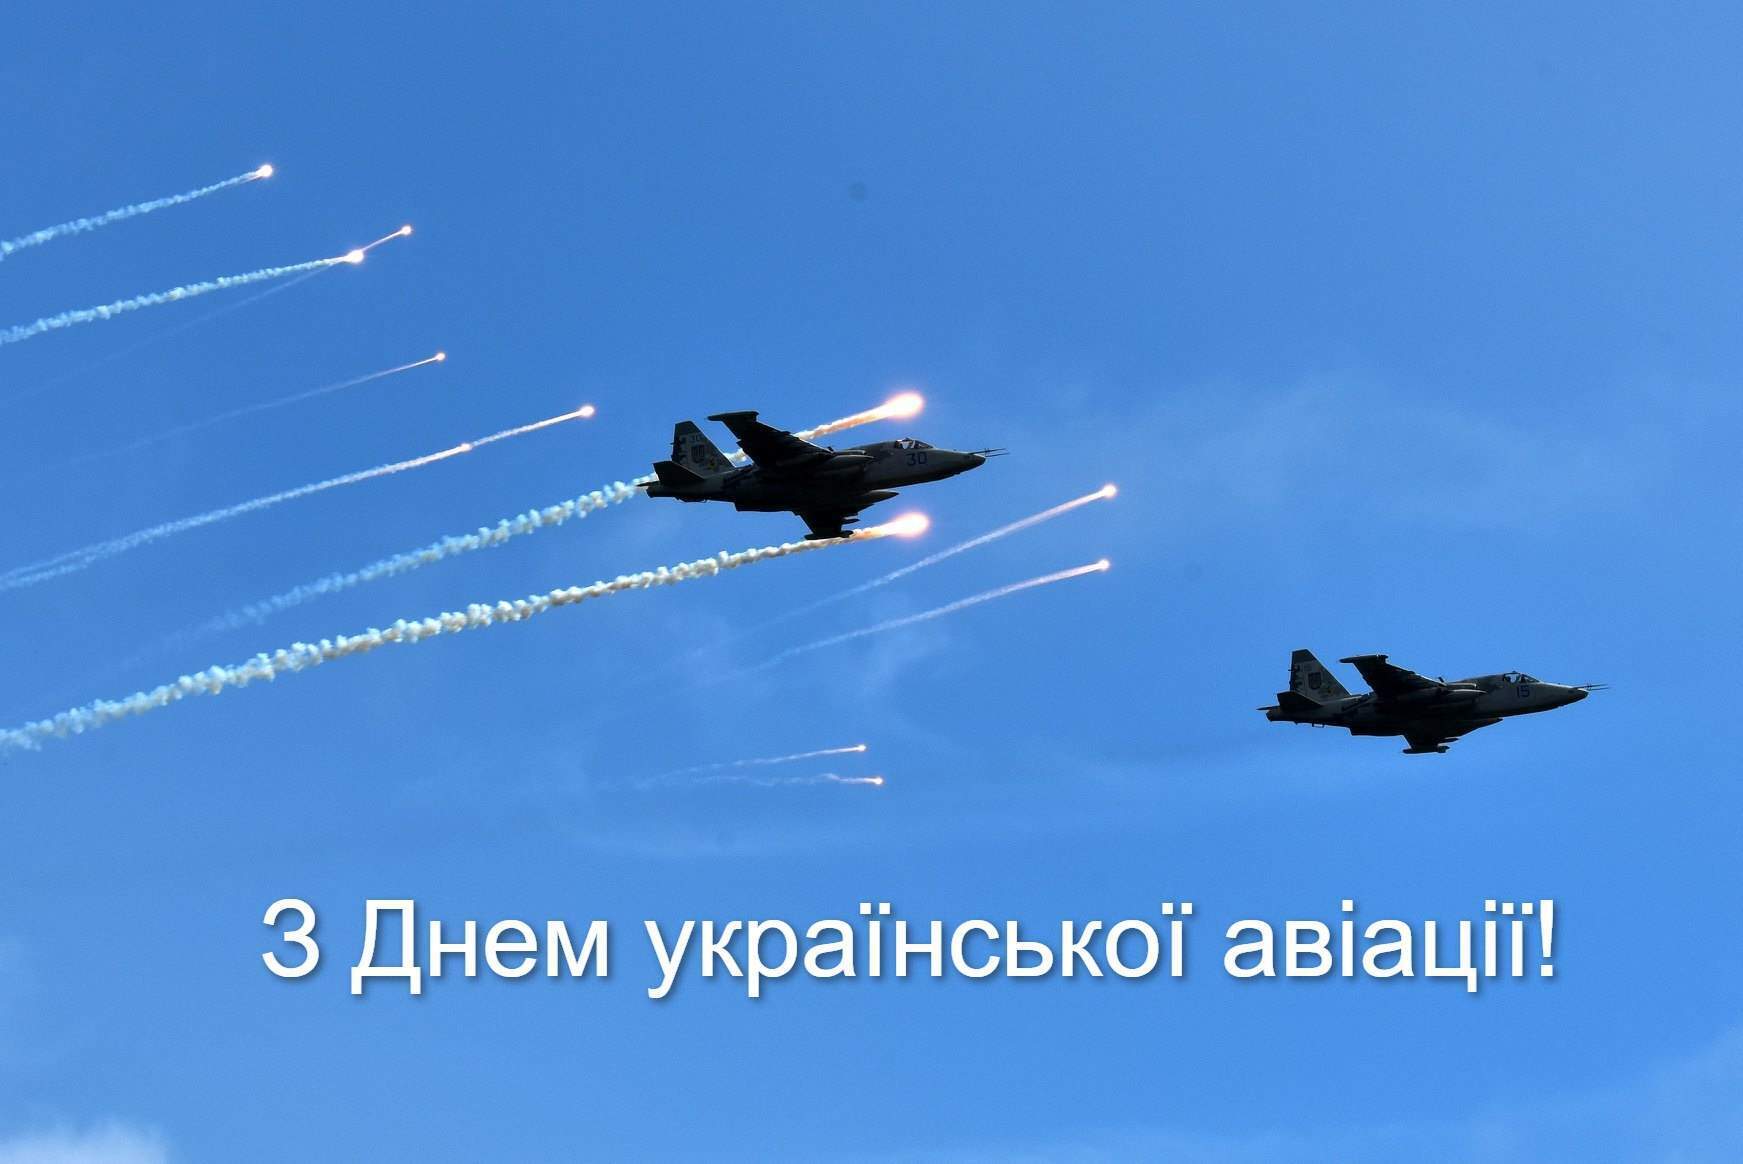 Открытка в День авиации Украины